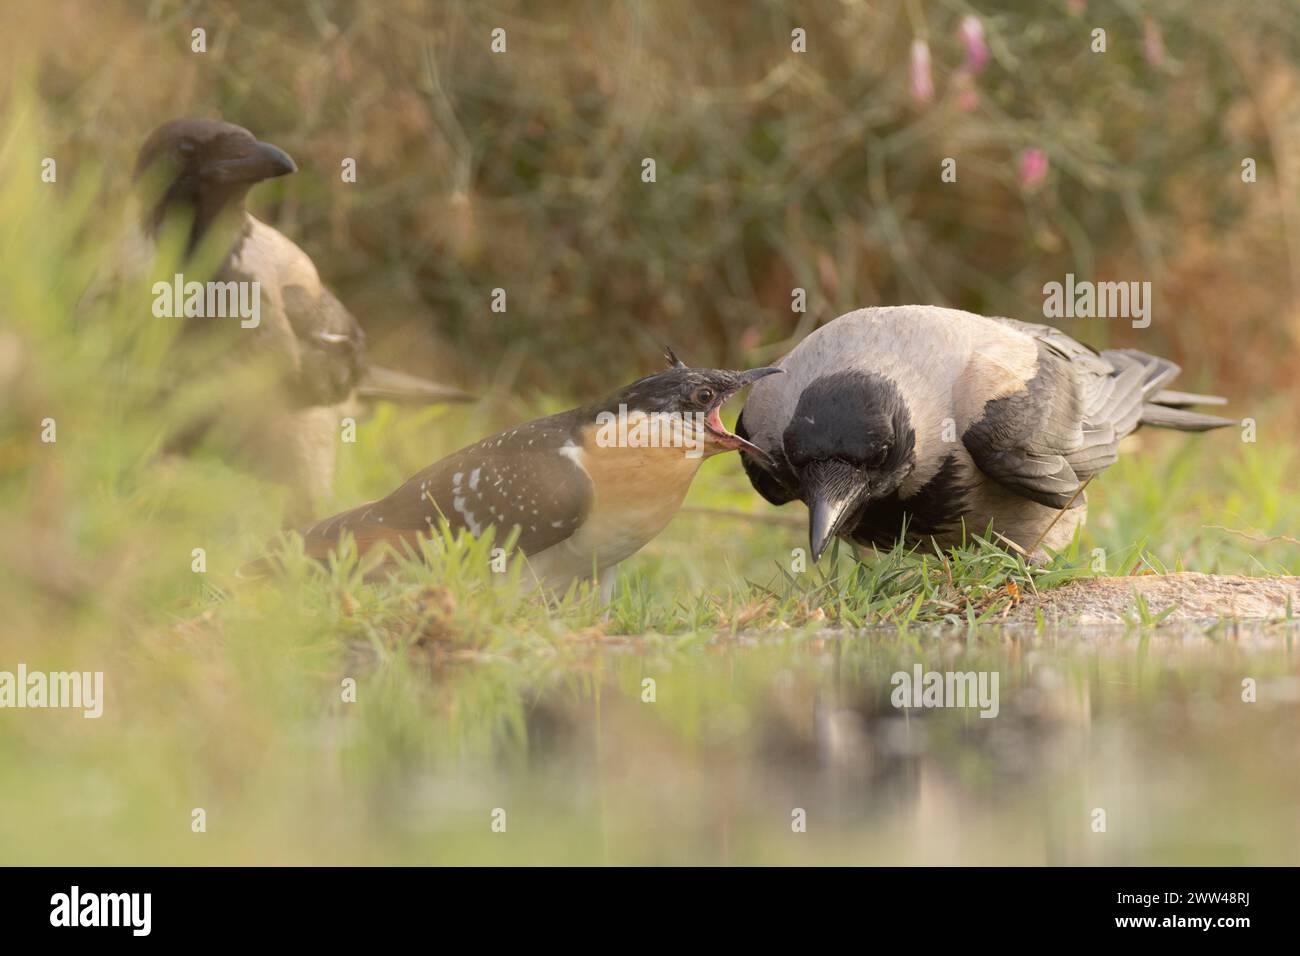 Grand coucou tacheté (Clamator glandarius) nourri par un corbeau à capuchon (Corvus cornix) le coucou est un parasite de couvain qui pond ses œufs dans les nids Banque D'Images